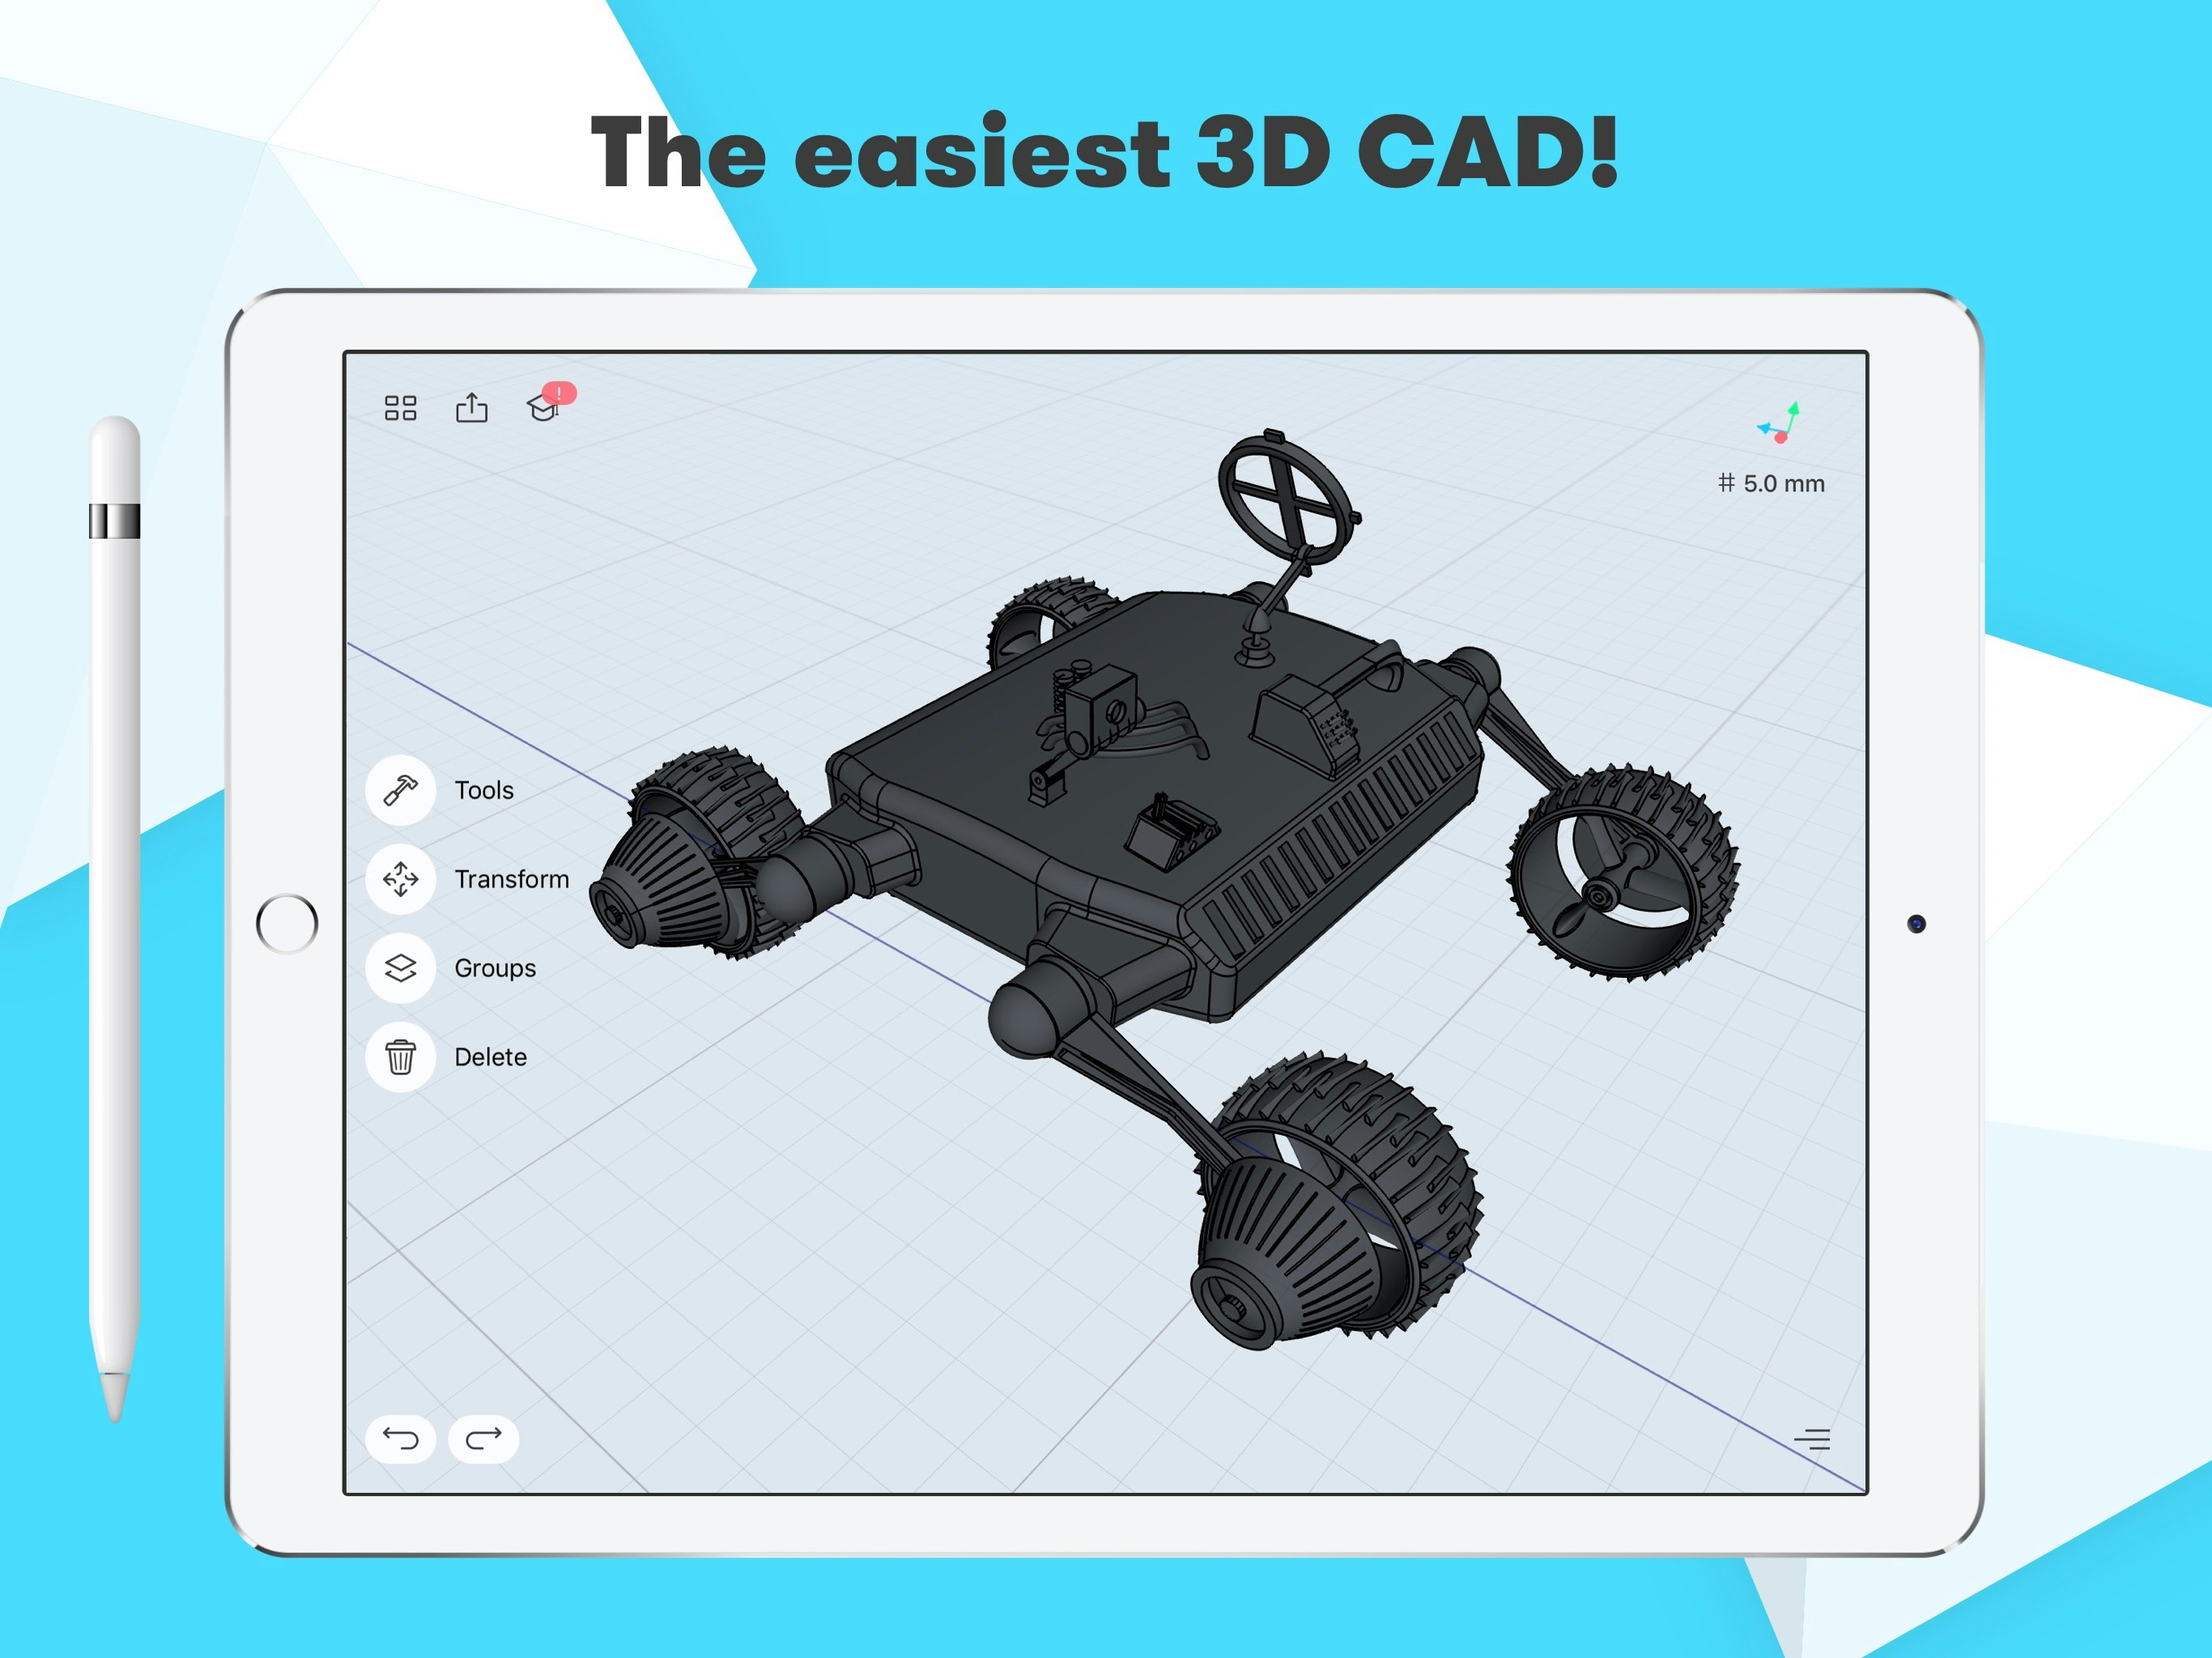 Phần mềm thiết kế 3D Shapr3D là một trong những phần mềm thiết kế 3D hàng đầu hiện nay với nhiều bản cập nhật mới nhất và đánh giá tích cực từ các chuyên gia đầu ngành. Với nhiều công cụ và tính năng tiên tiến, người dùng có thể dễ dàng tạo ra những mẫu thiết kế đẹp và chuyên nghiệp. Hãy cùng khám phá và trải nghiệm những tính năng tiên tiến của Shapr3D ngay hôm nay.